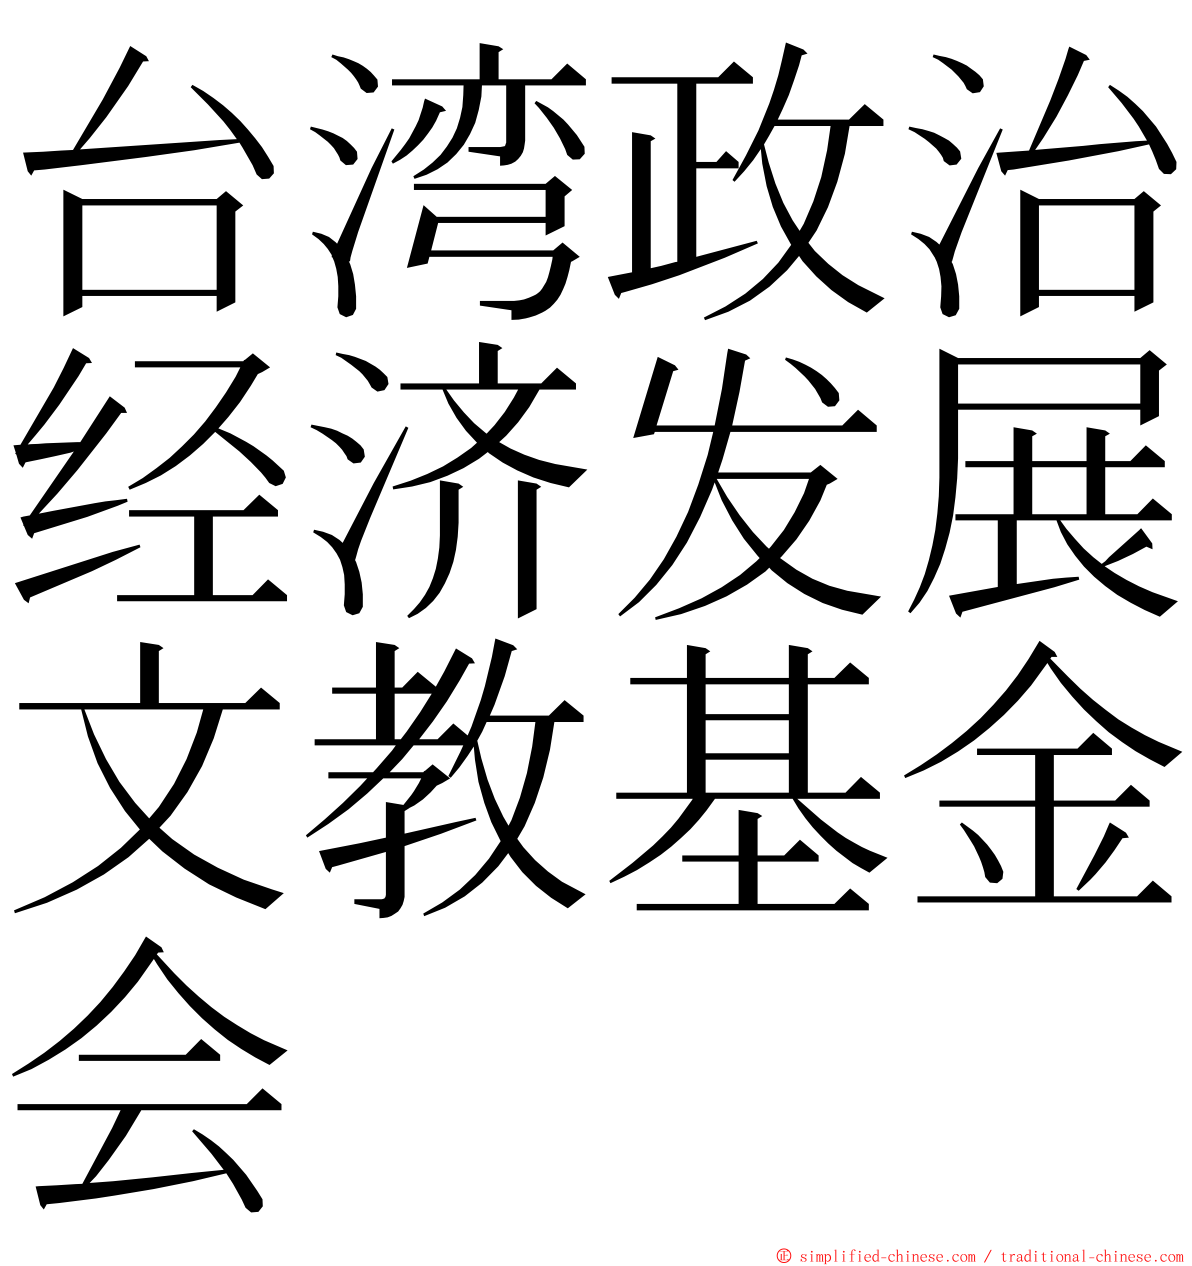 台湾政治经济发展文教基金会 ming font